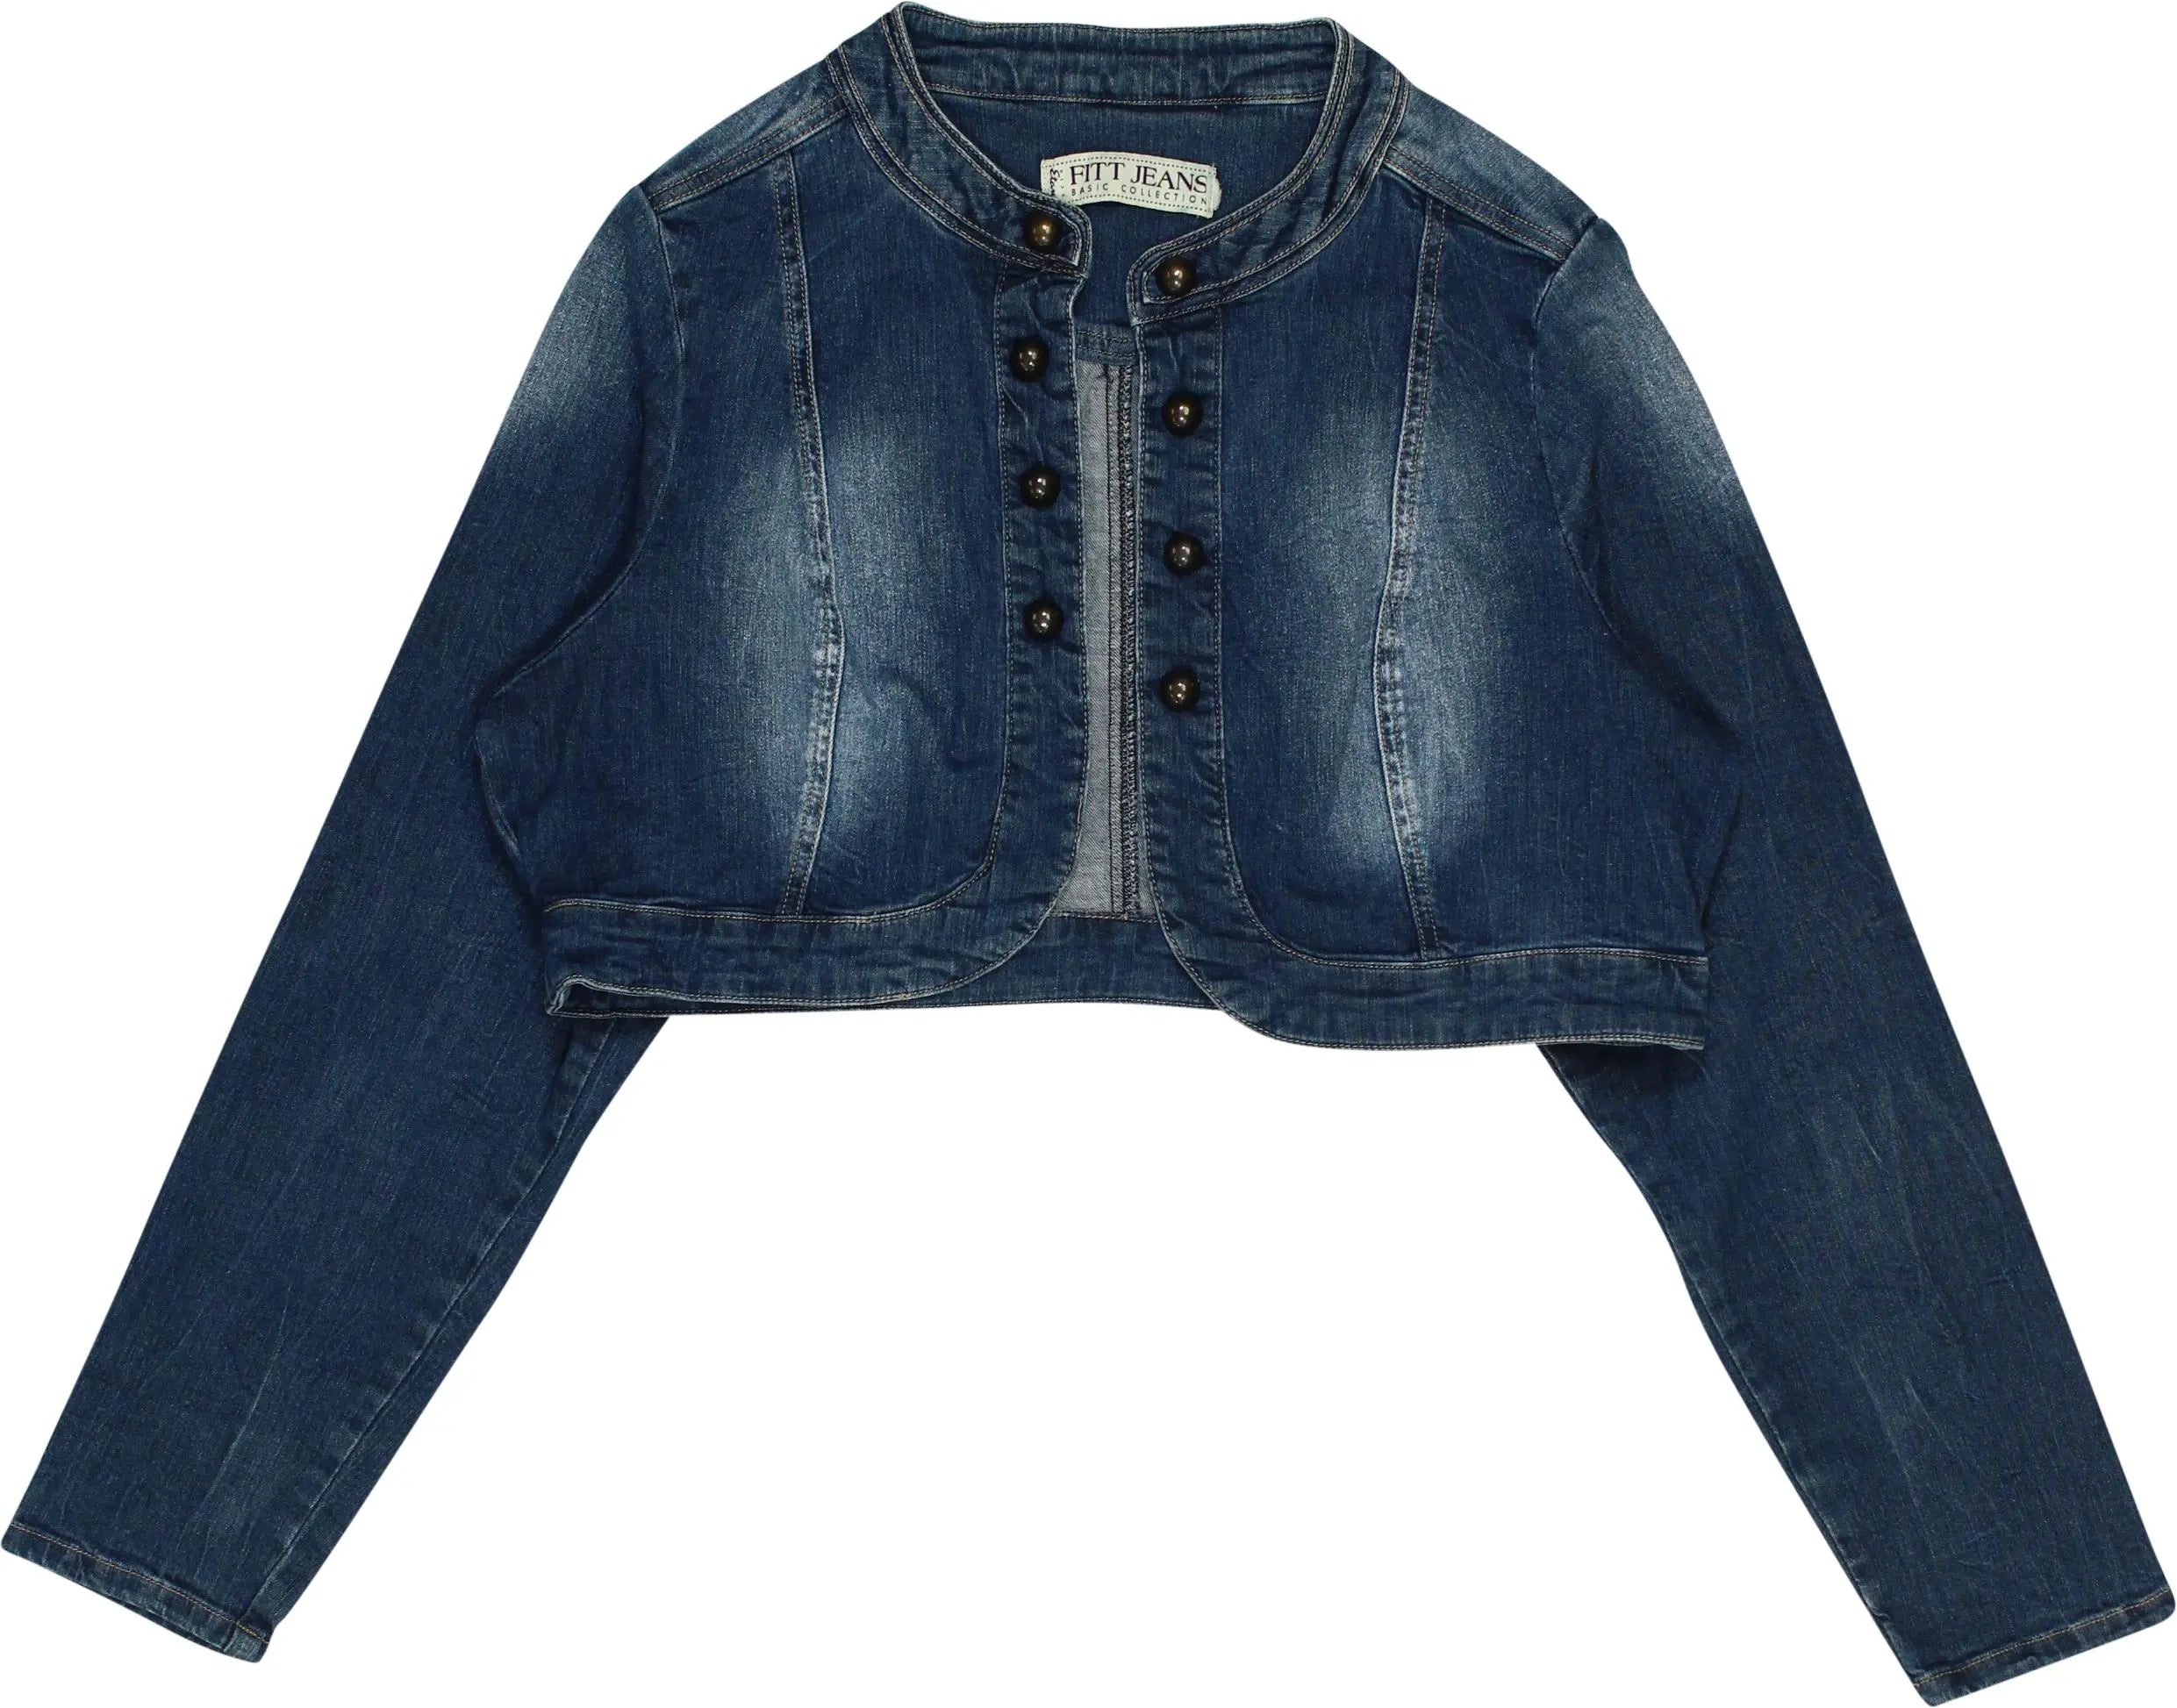 Miss Etam - Short Denim Jacket- ThriftTale.com - Vintage and second handclothing